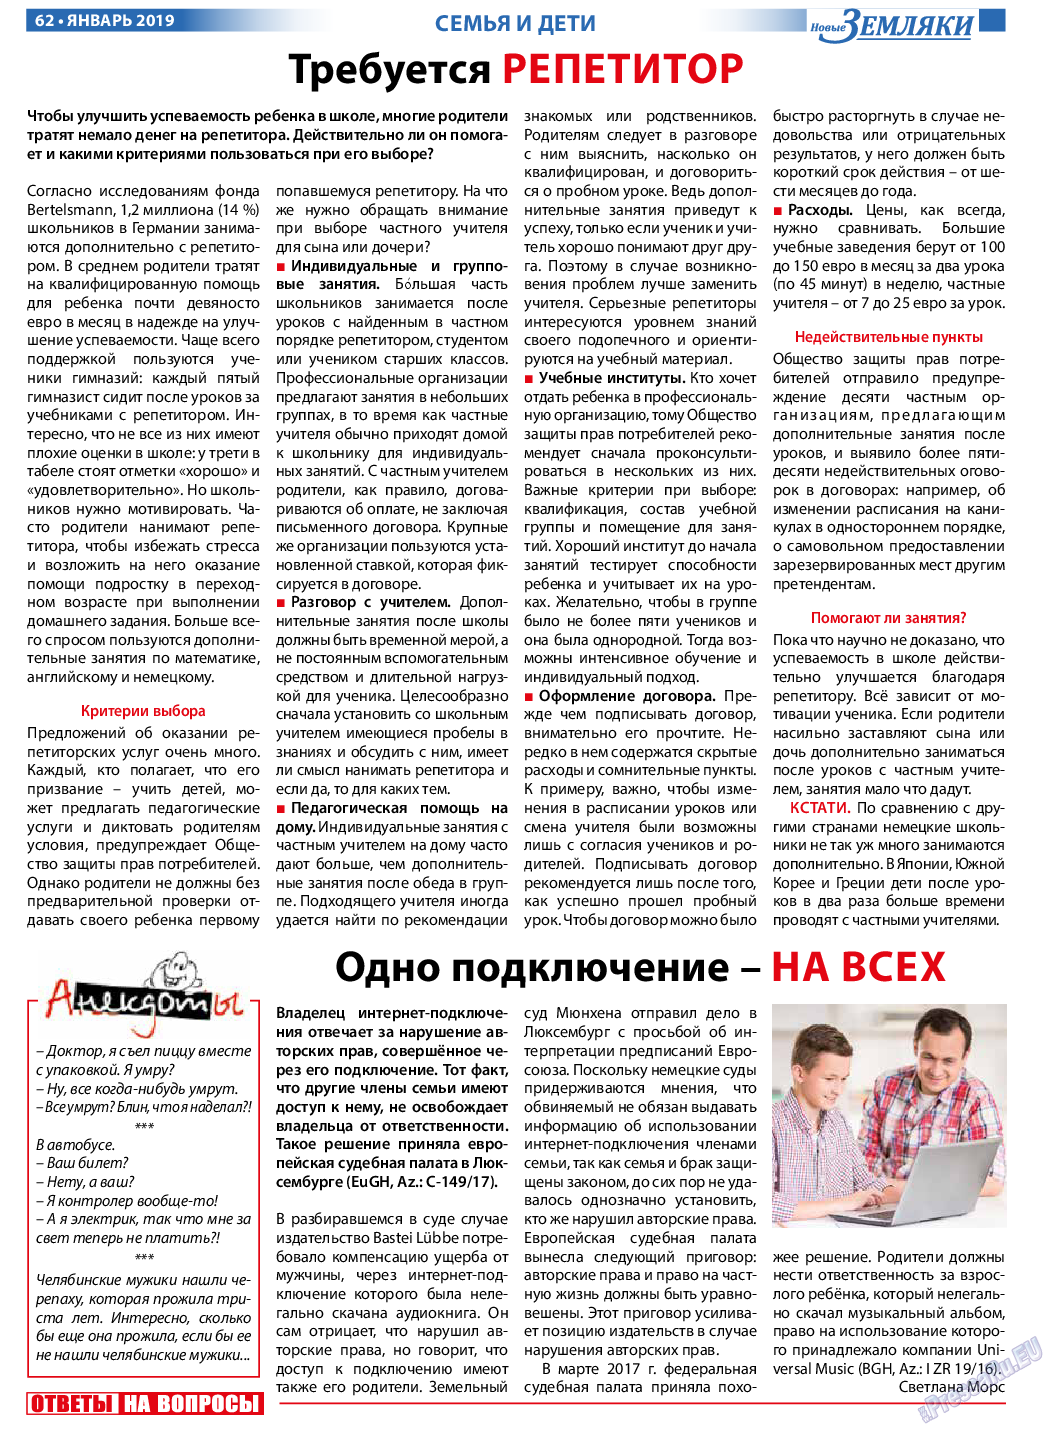 Новые Земляки, газета. 2019 №1 стр.62